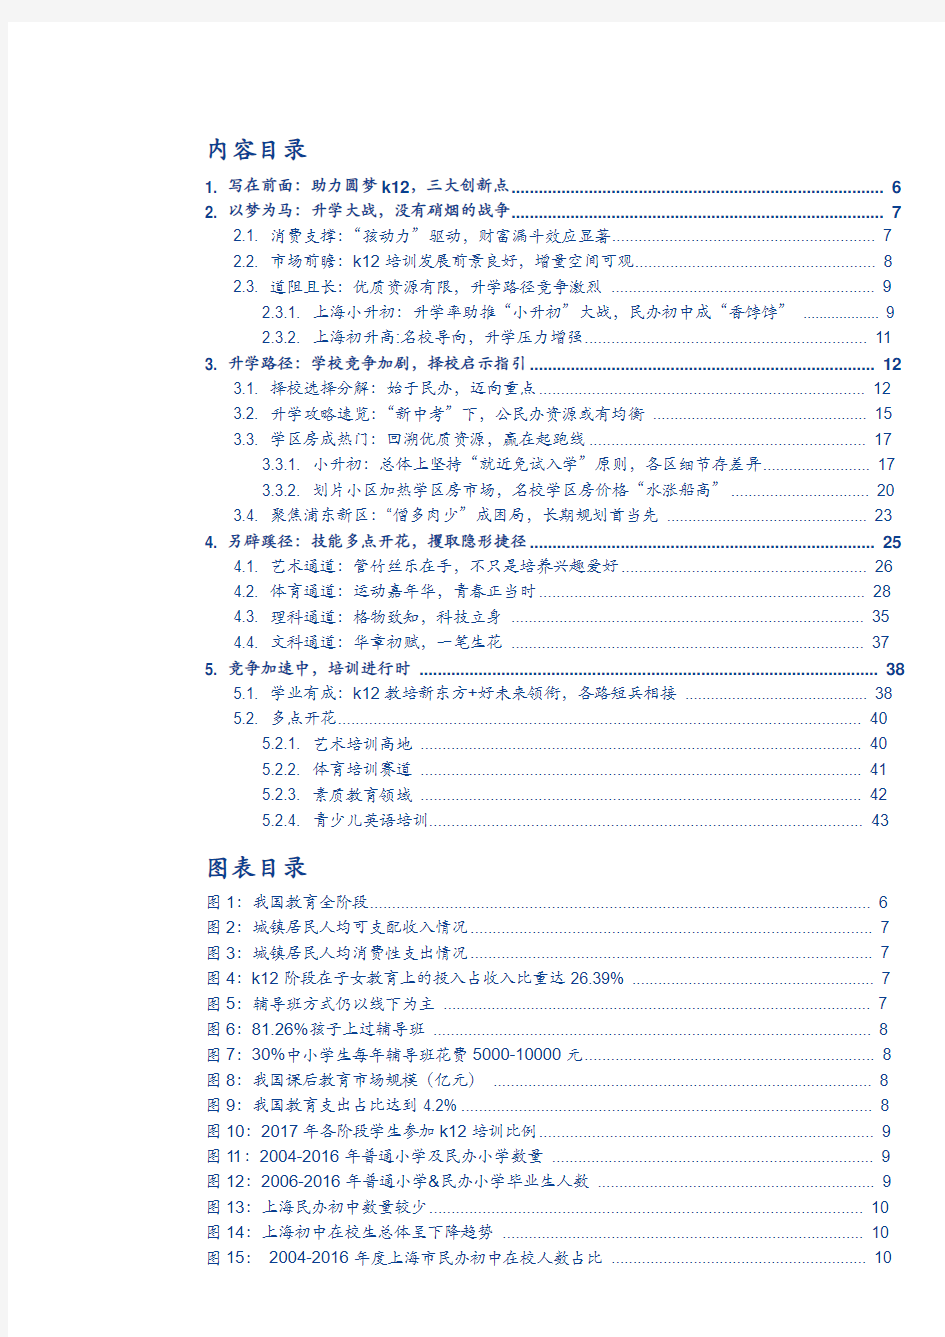 2018年上海K12教育培训行业深度分析报告